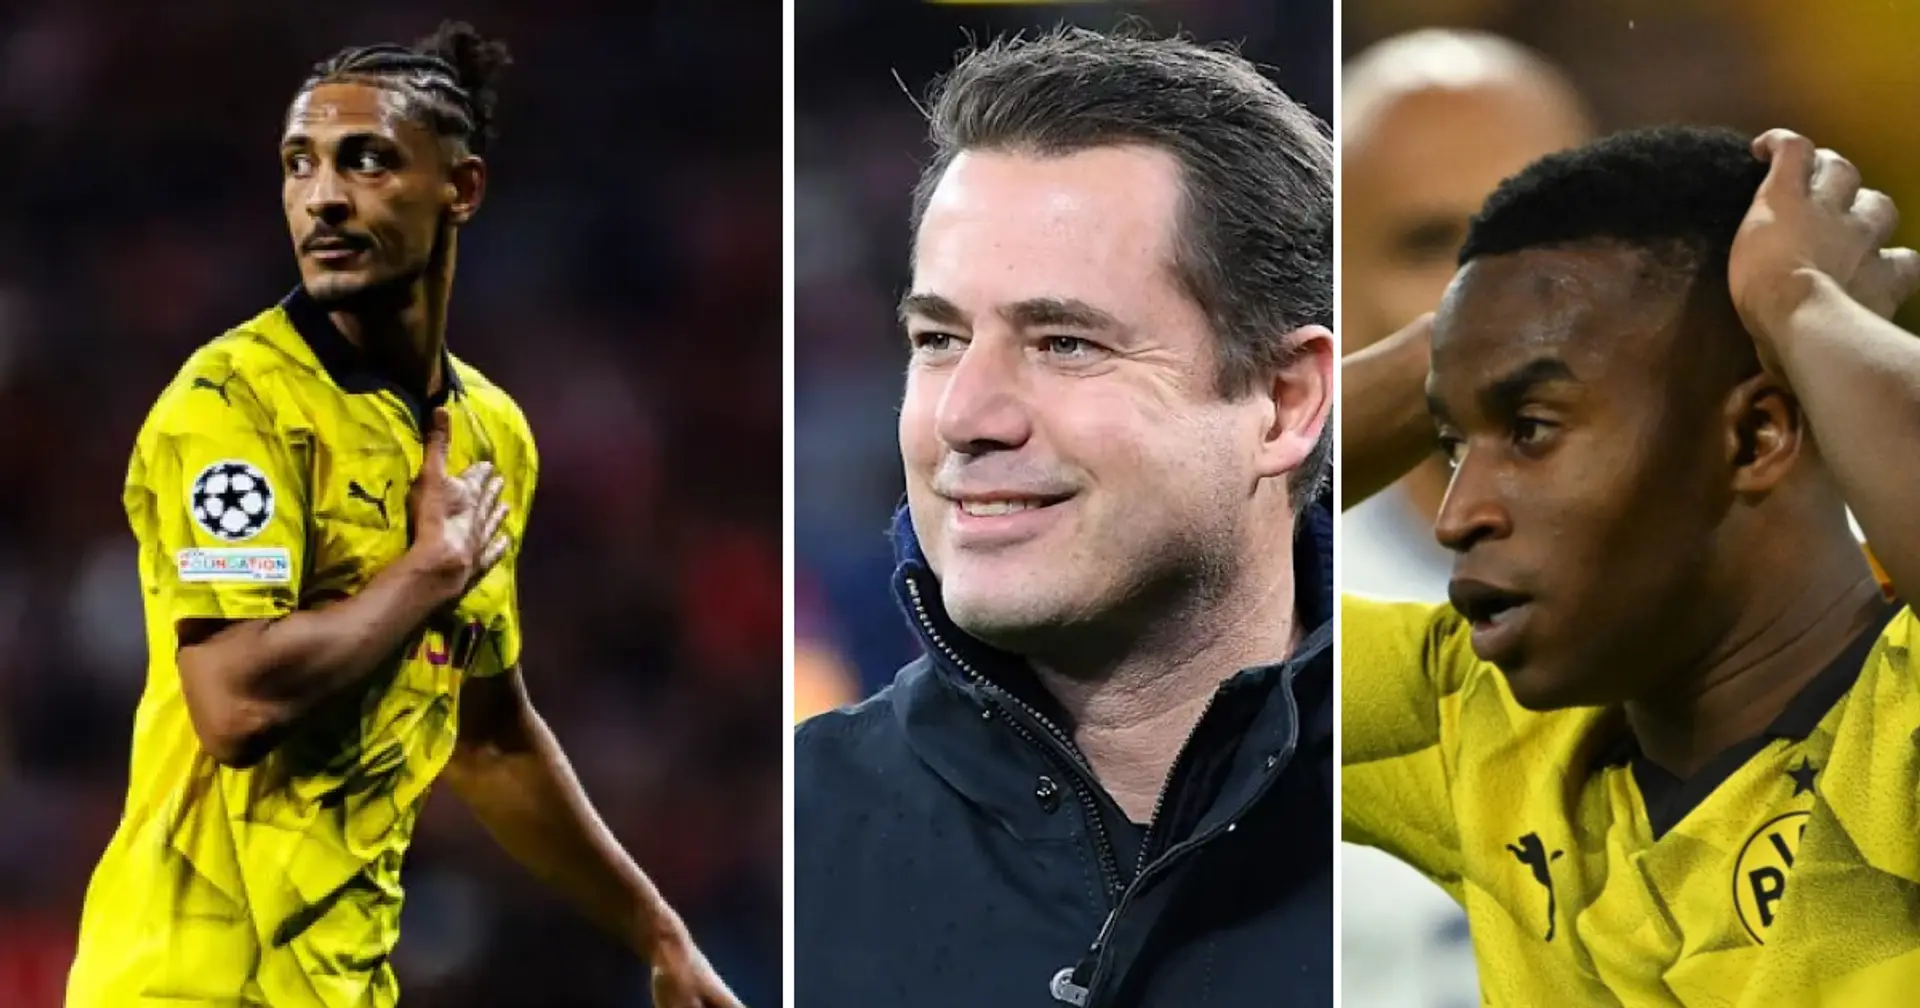 Der Gehaltsetat für die erste Mannschaft der Dortmunder muss um rund 5 Millionen Euro gekürzt werden - drei prominente BVB-Spieler auf der Streichliste